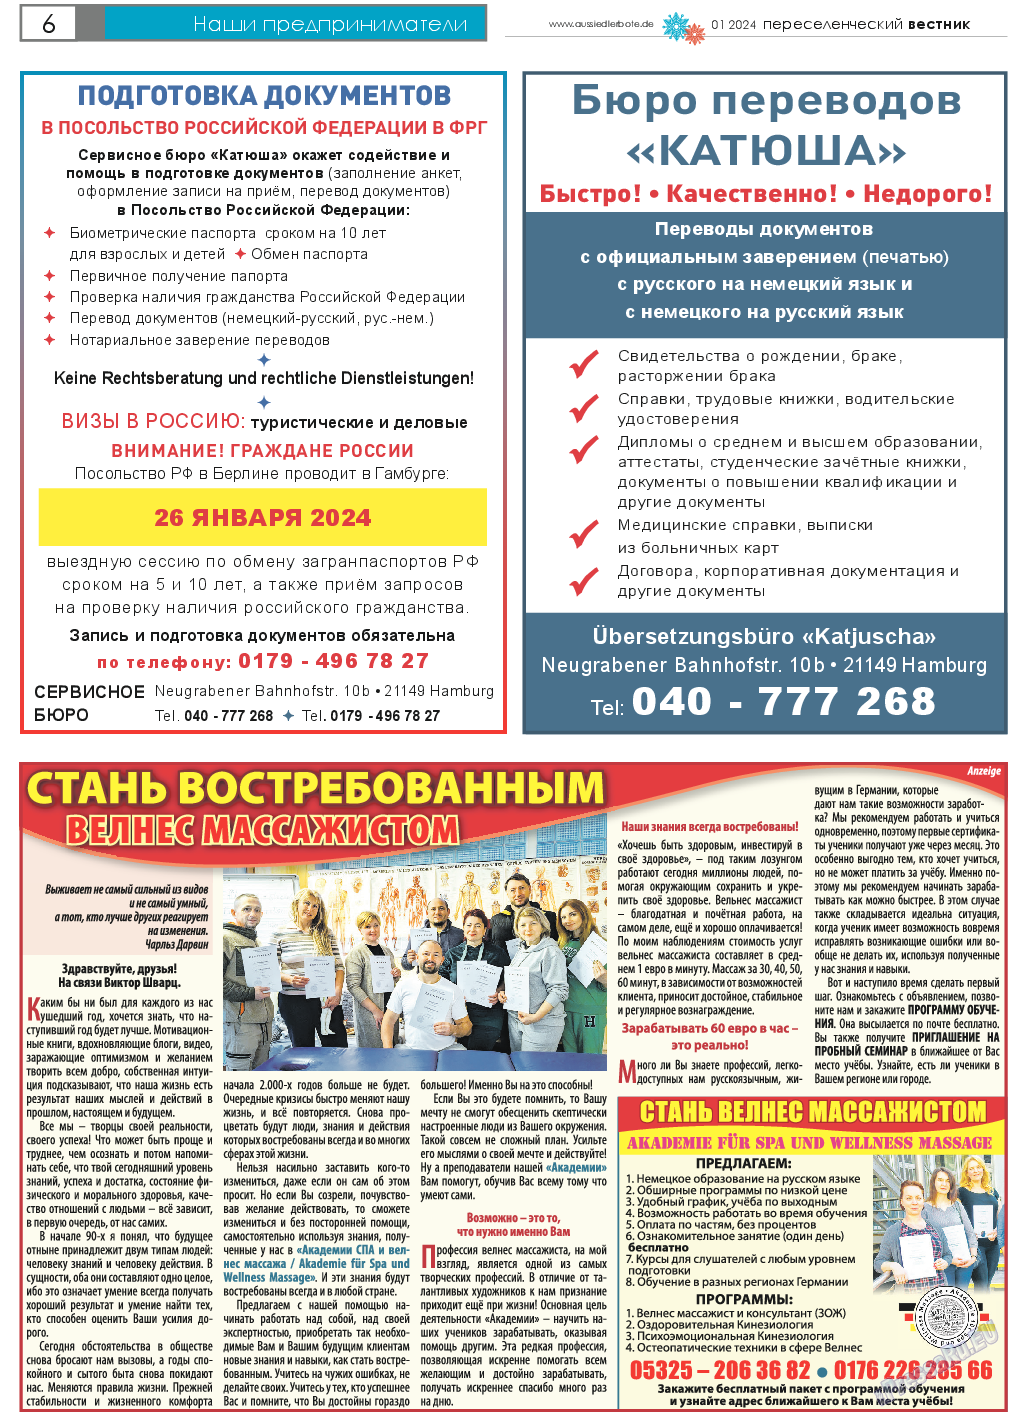 Переселенческий вестник, газета. 2024 №1 стр.6